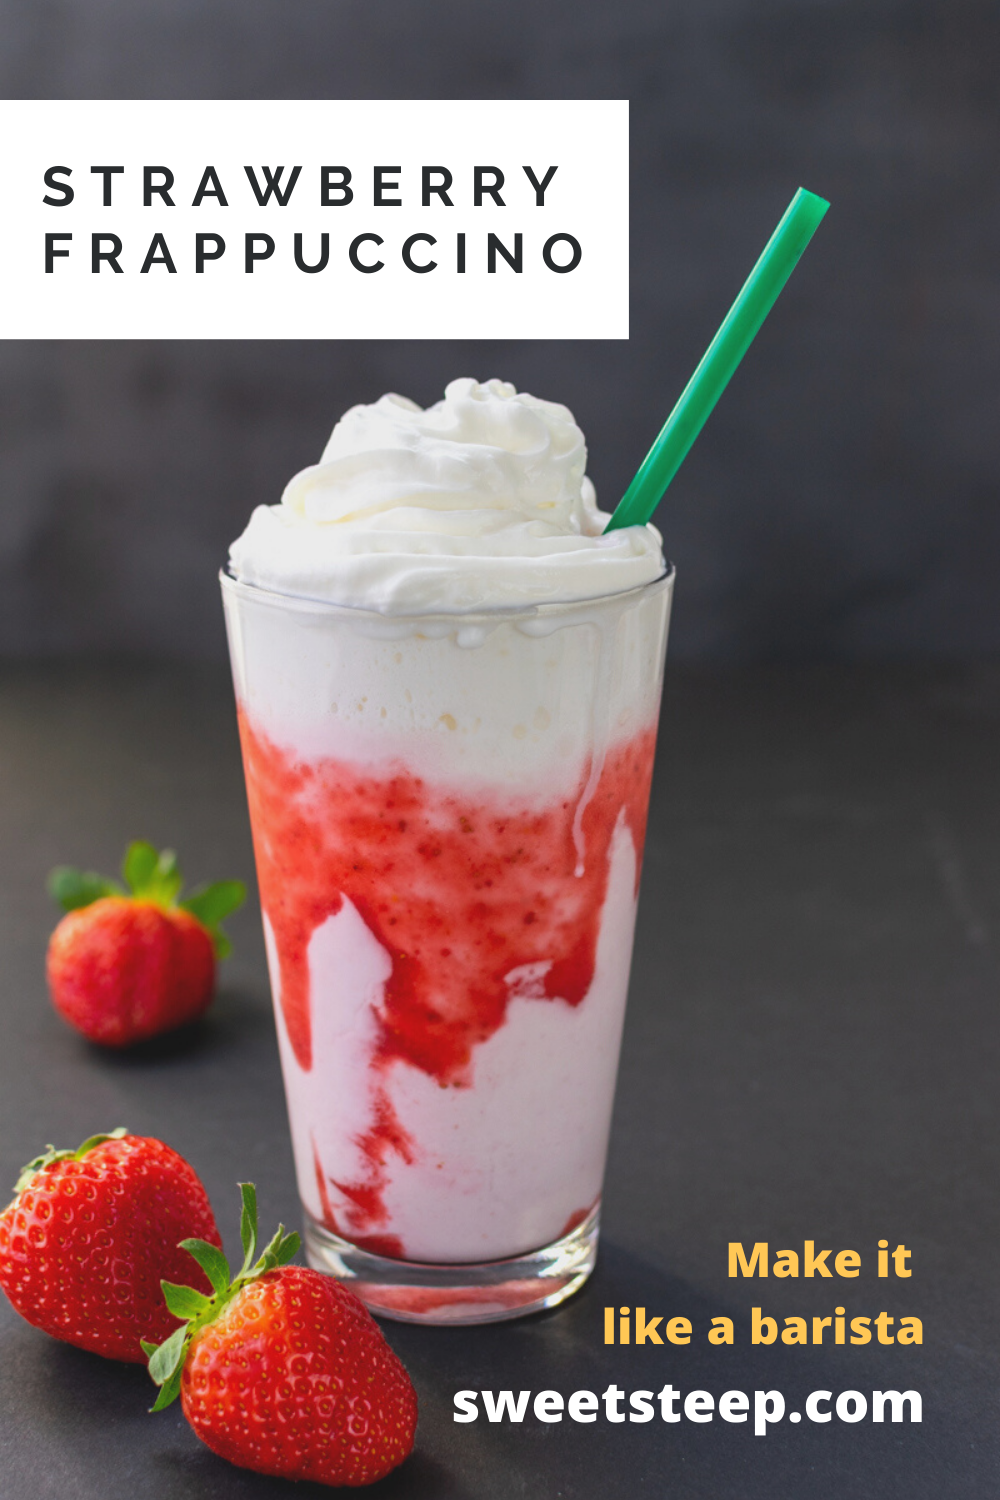 Starbucks Strawberry Frappuccino copycat recipe